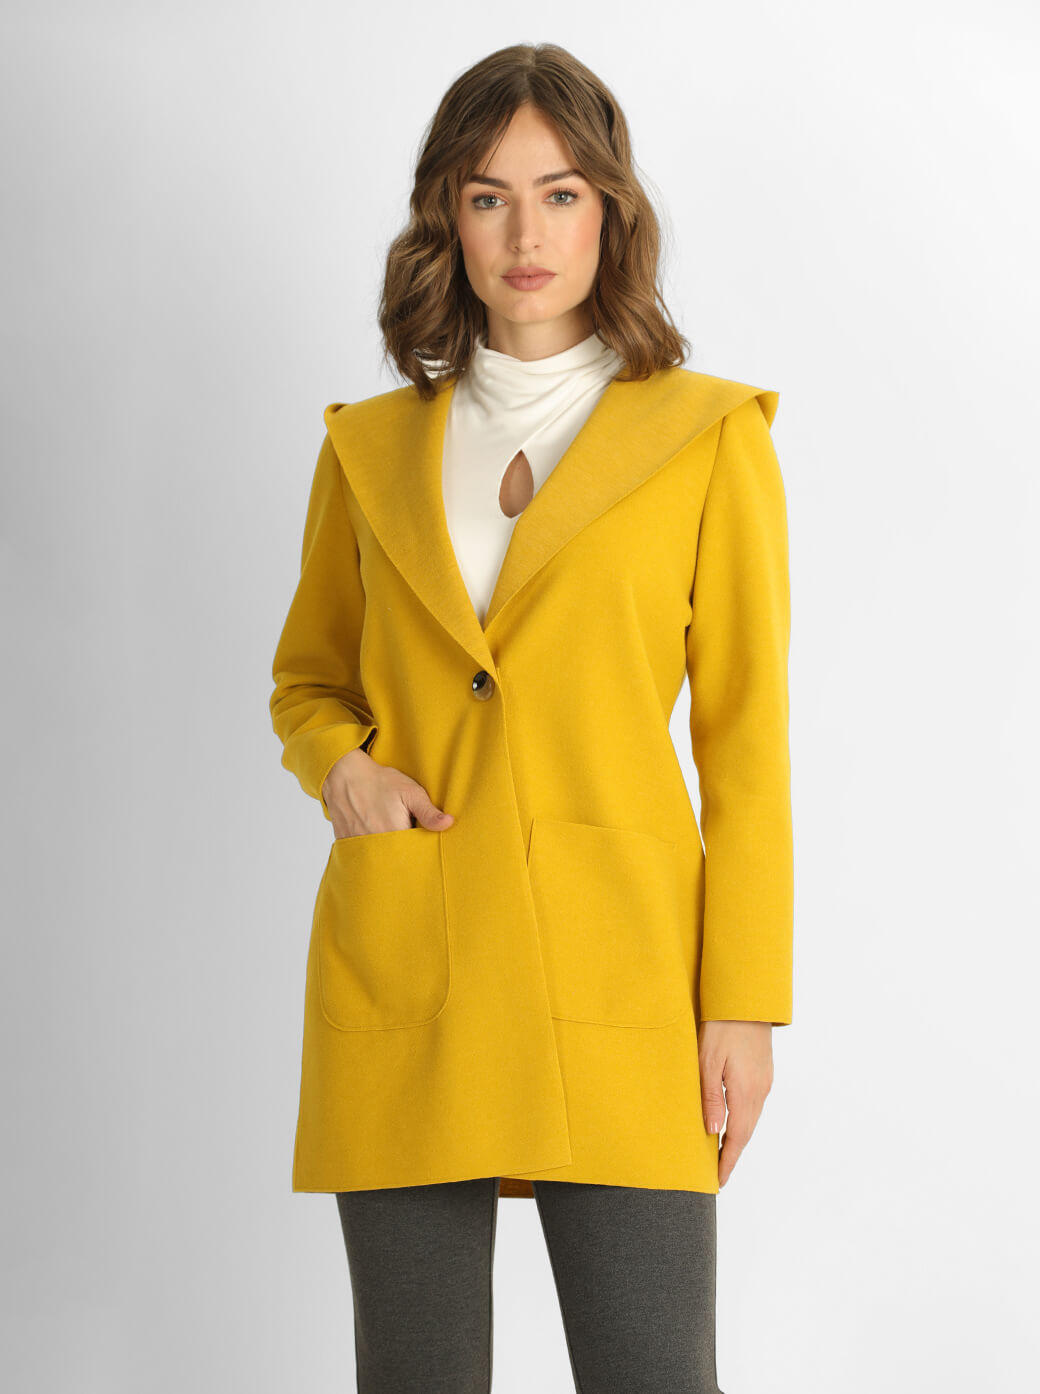 Abrigo amarillo cruzado Esenciales